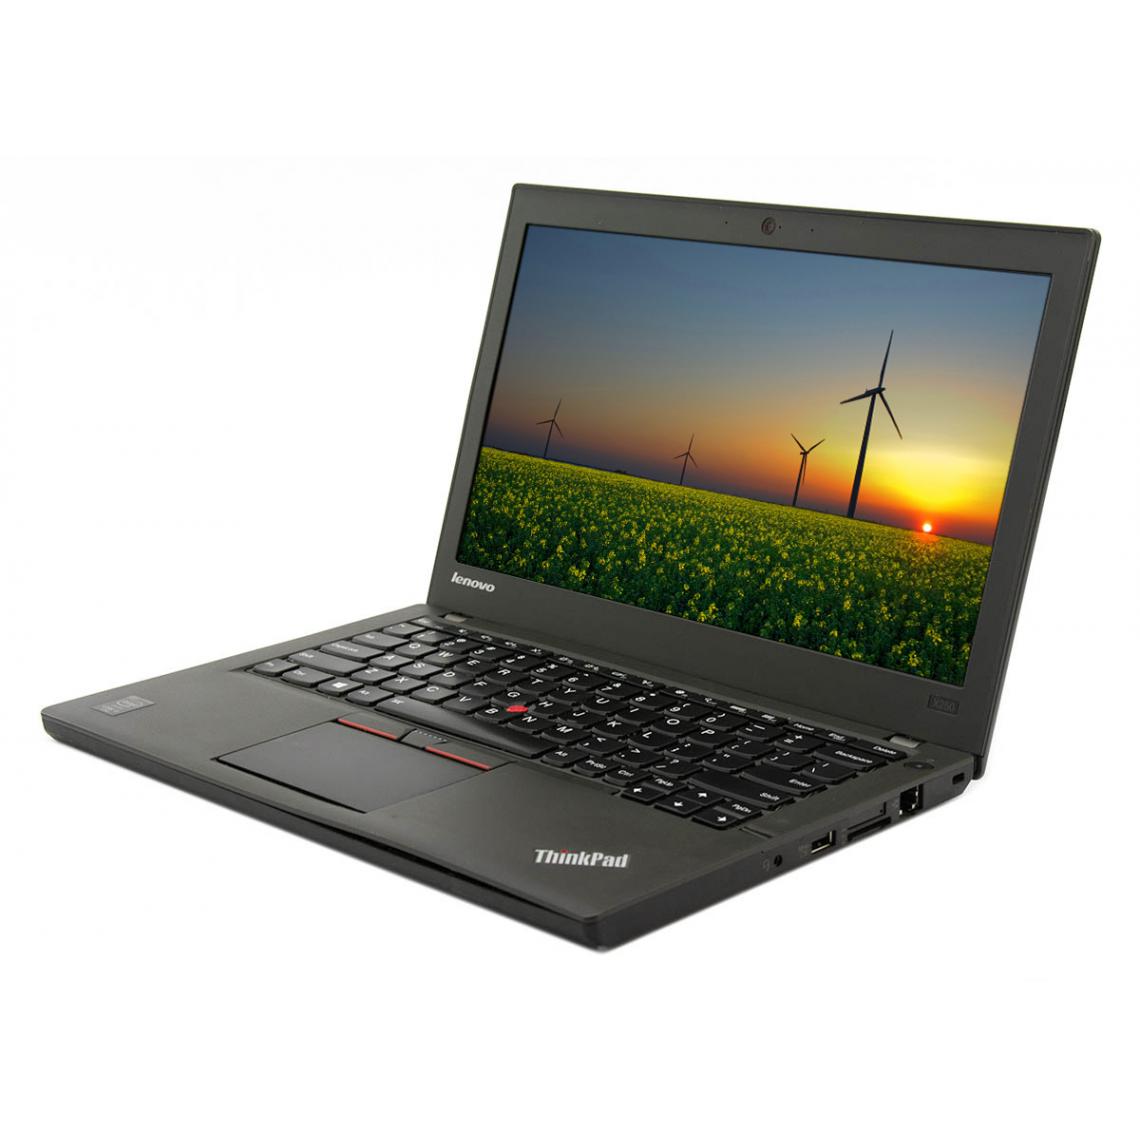 Lenovo - ThinkPad X250, Intel Core i5-5300U, 8GB RAM, 128GB SSD, 12.5"HD, WLAN, Bluetooth, WebCam - PC Portable